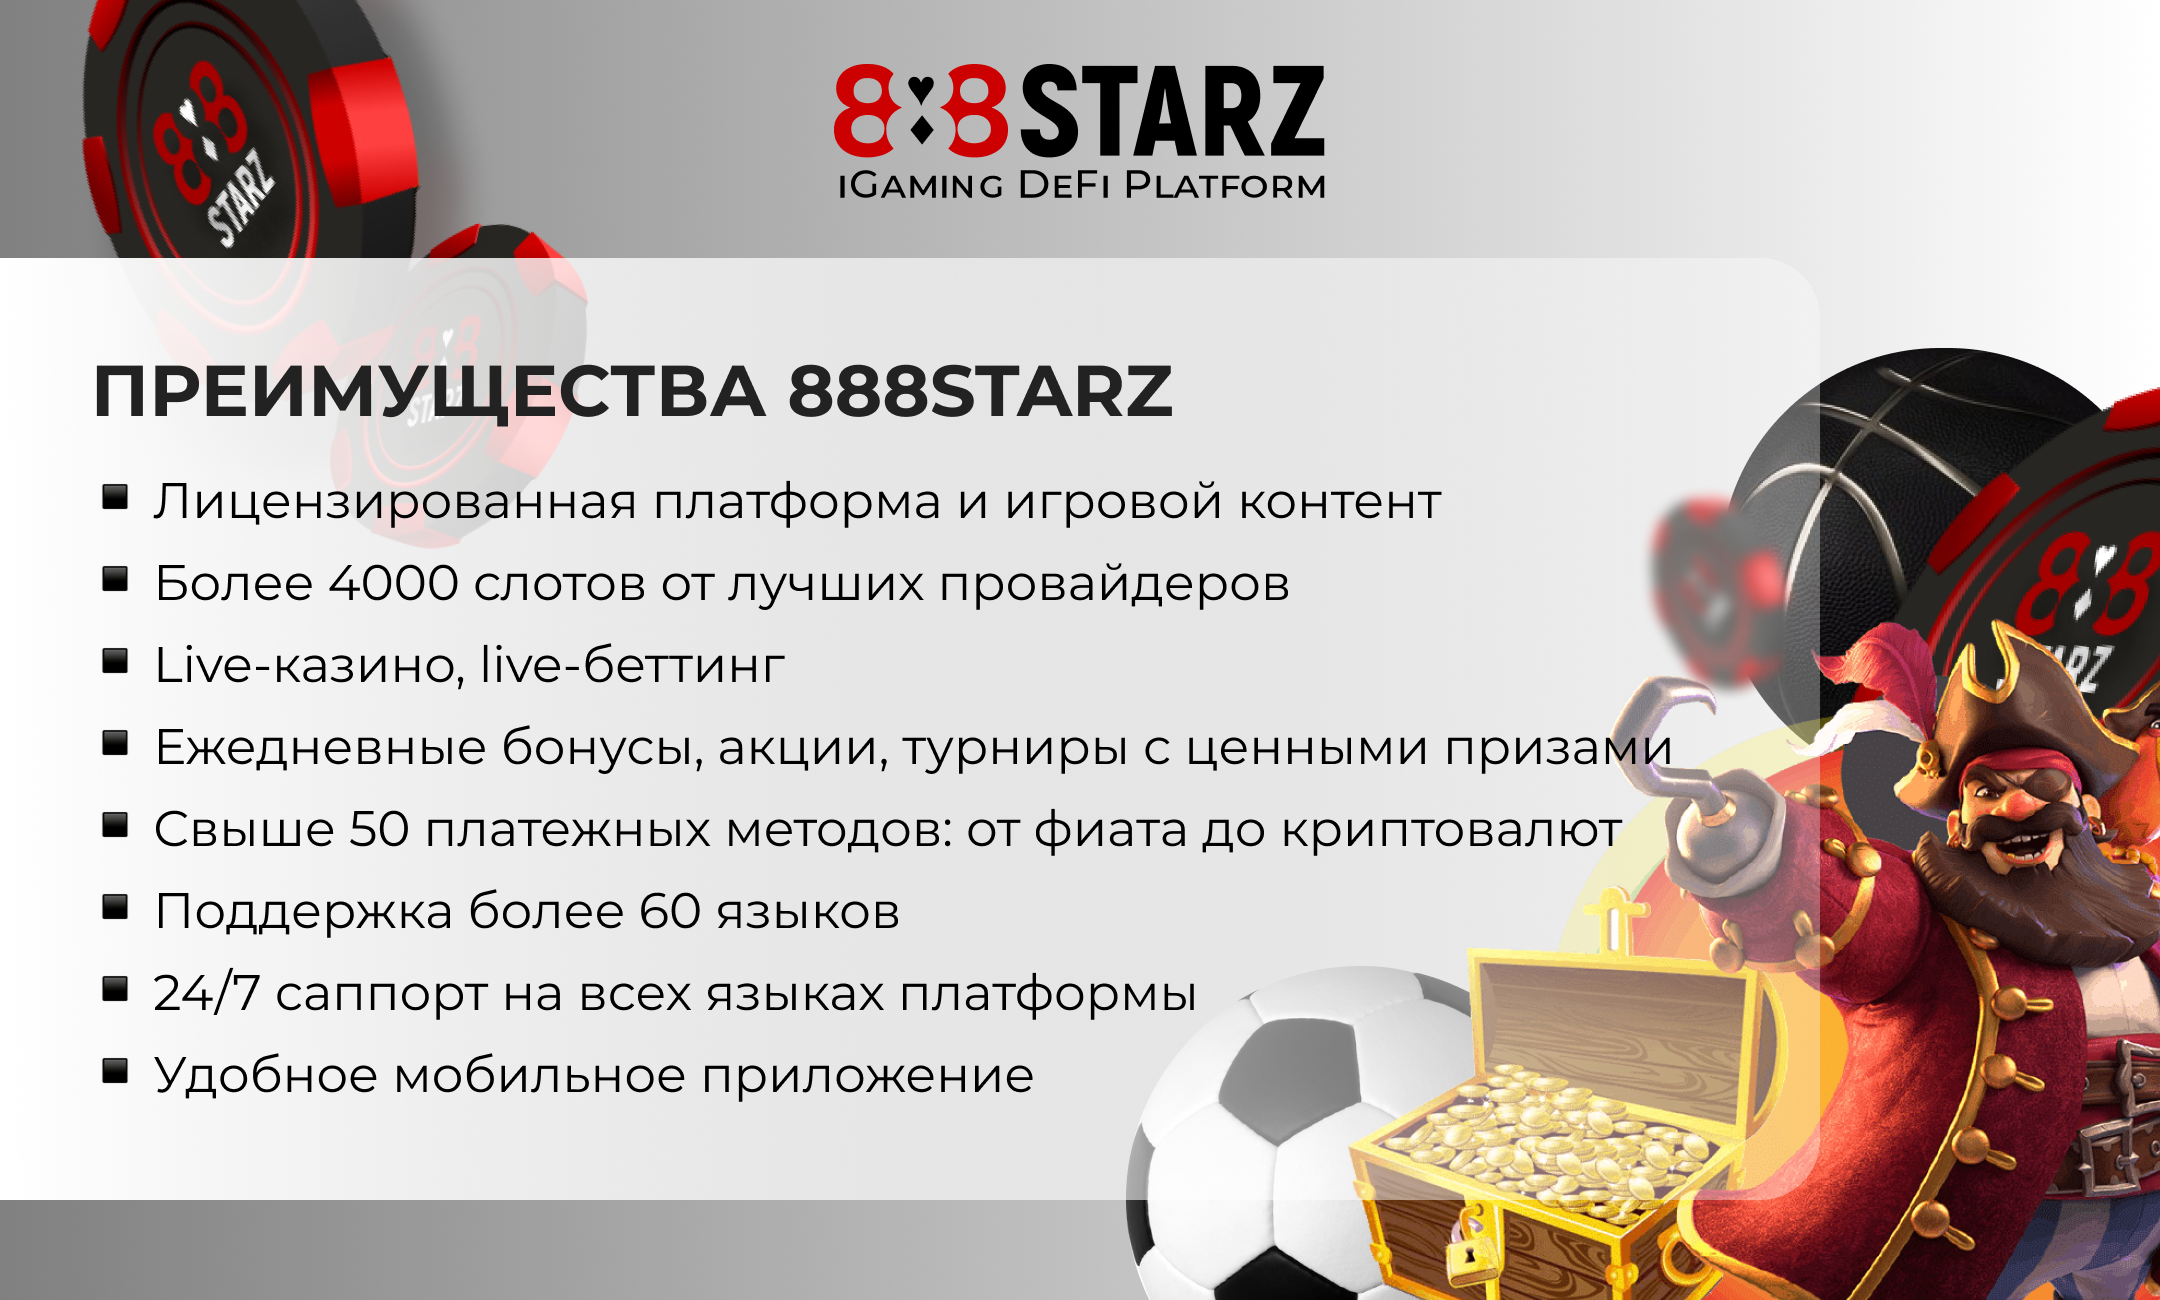 888 starz 888starz shop 888 starz net. 888starz бонус пятница. 888starz. IGAMING. 888 Starz букмекер и казино.